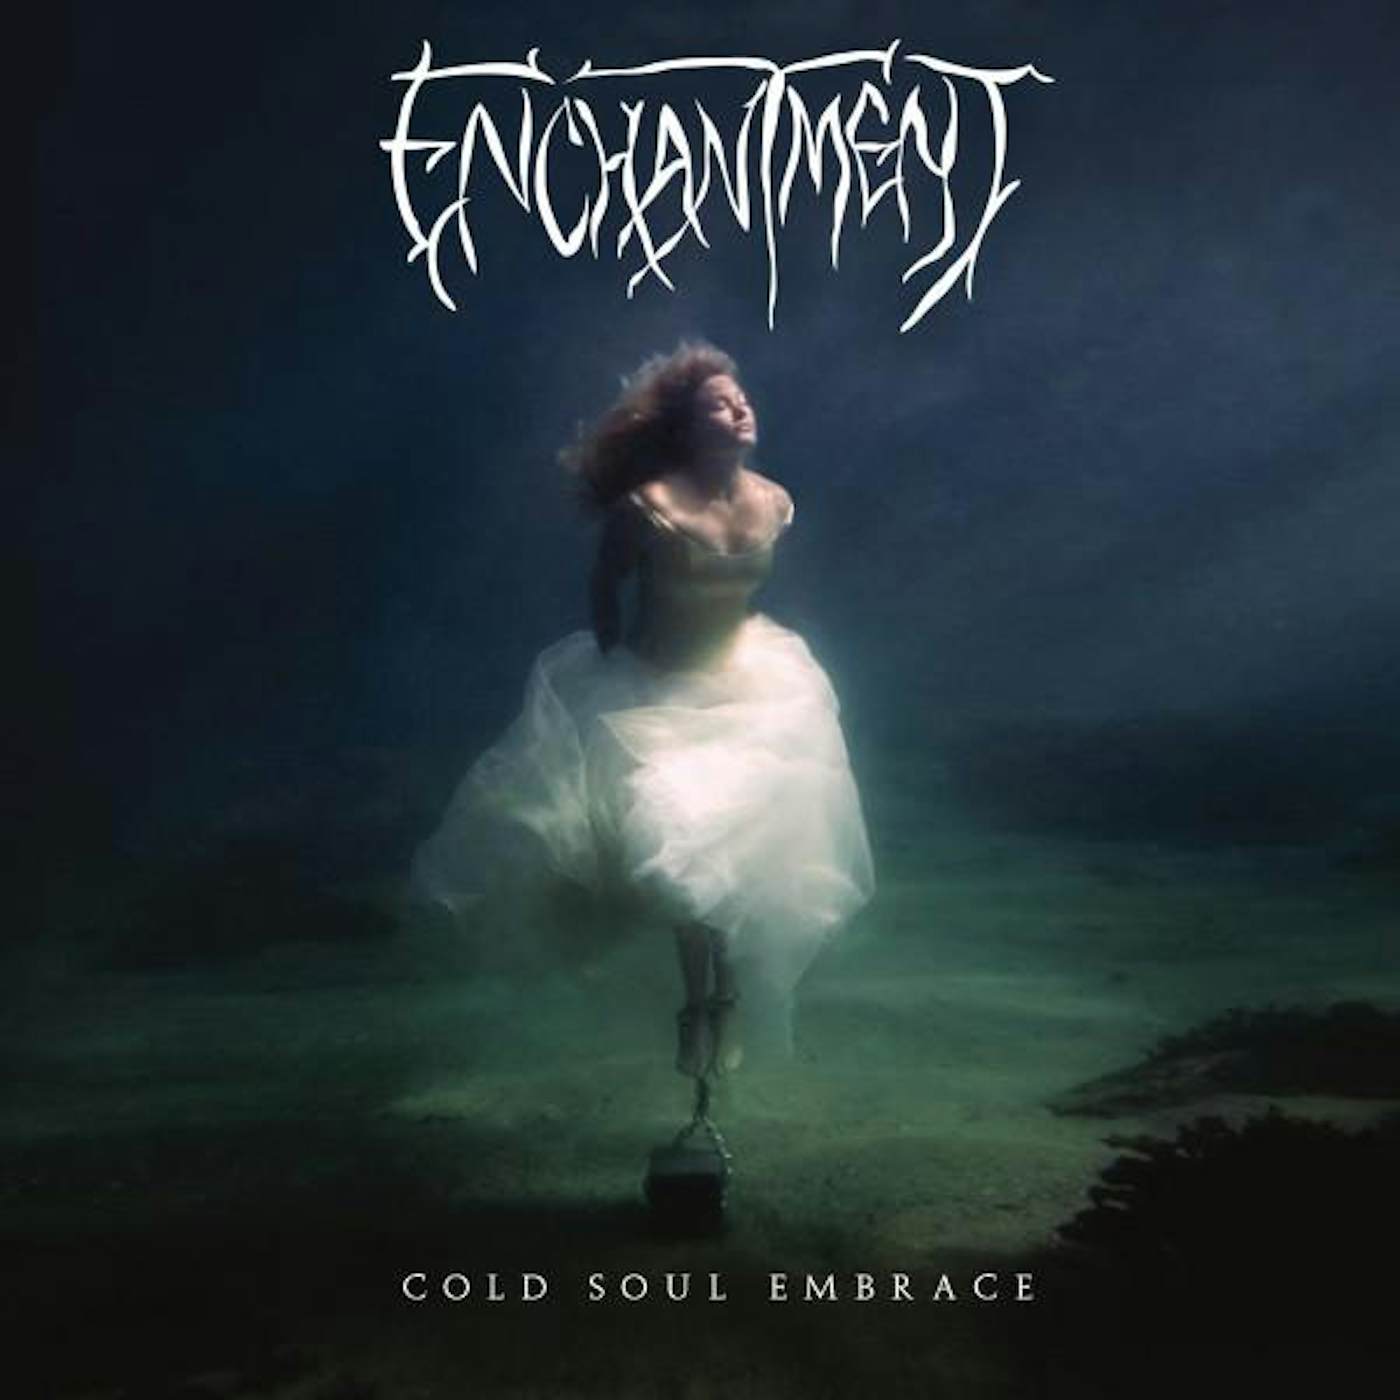 Enchantment COLD SOUL EMBRACE Vinyl Record